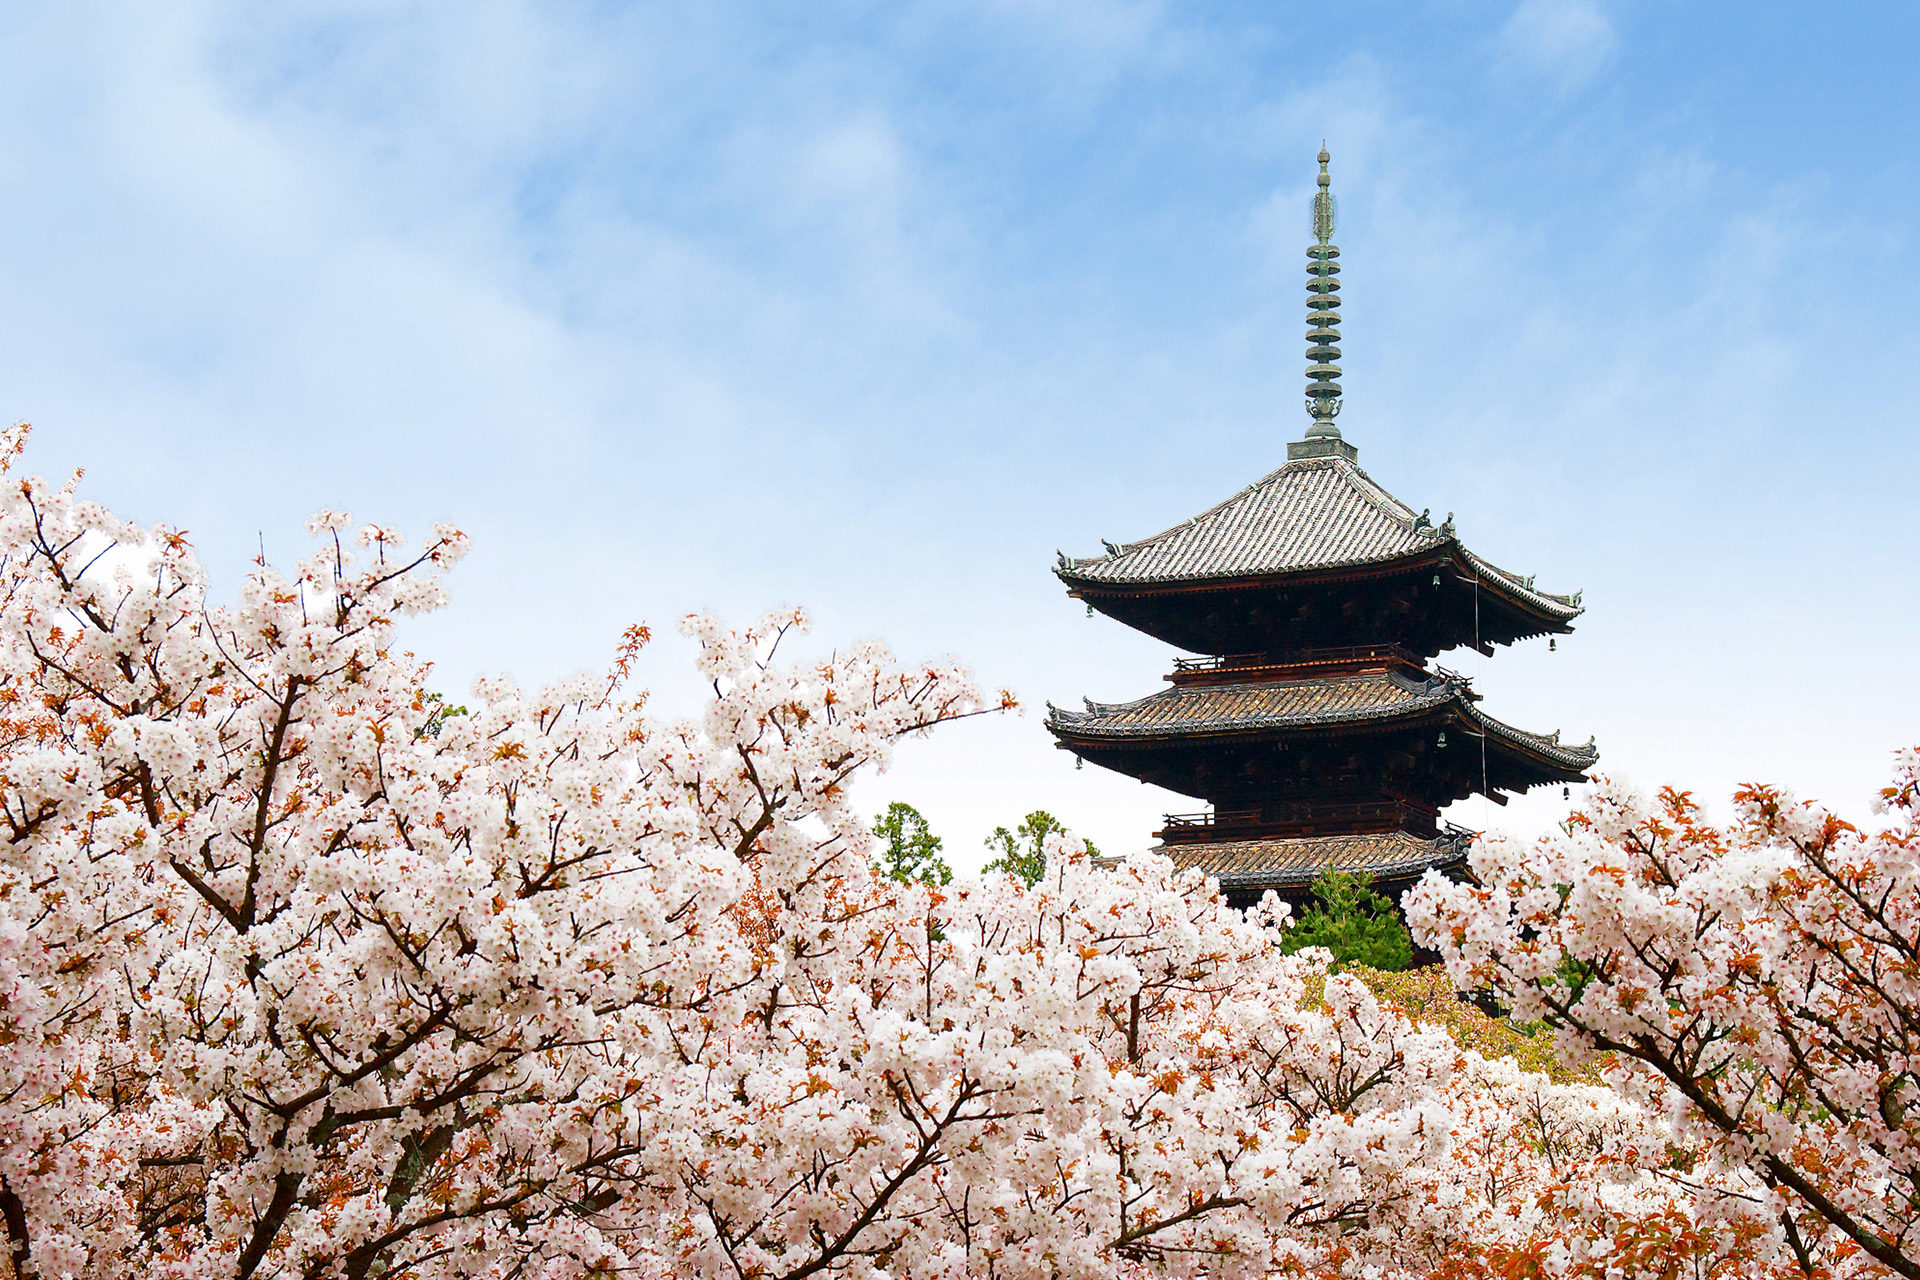 用實況攝像機，來看看京都櫻花的盛開情况吧！